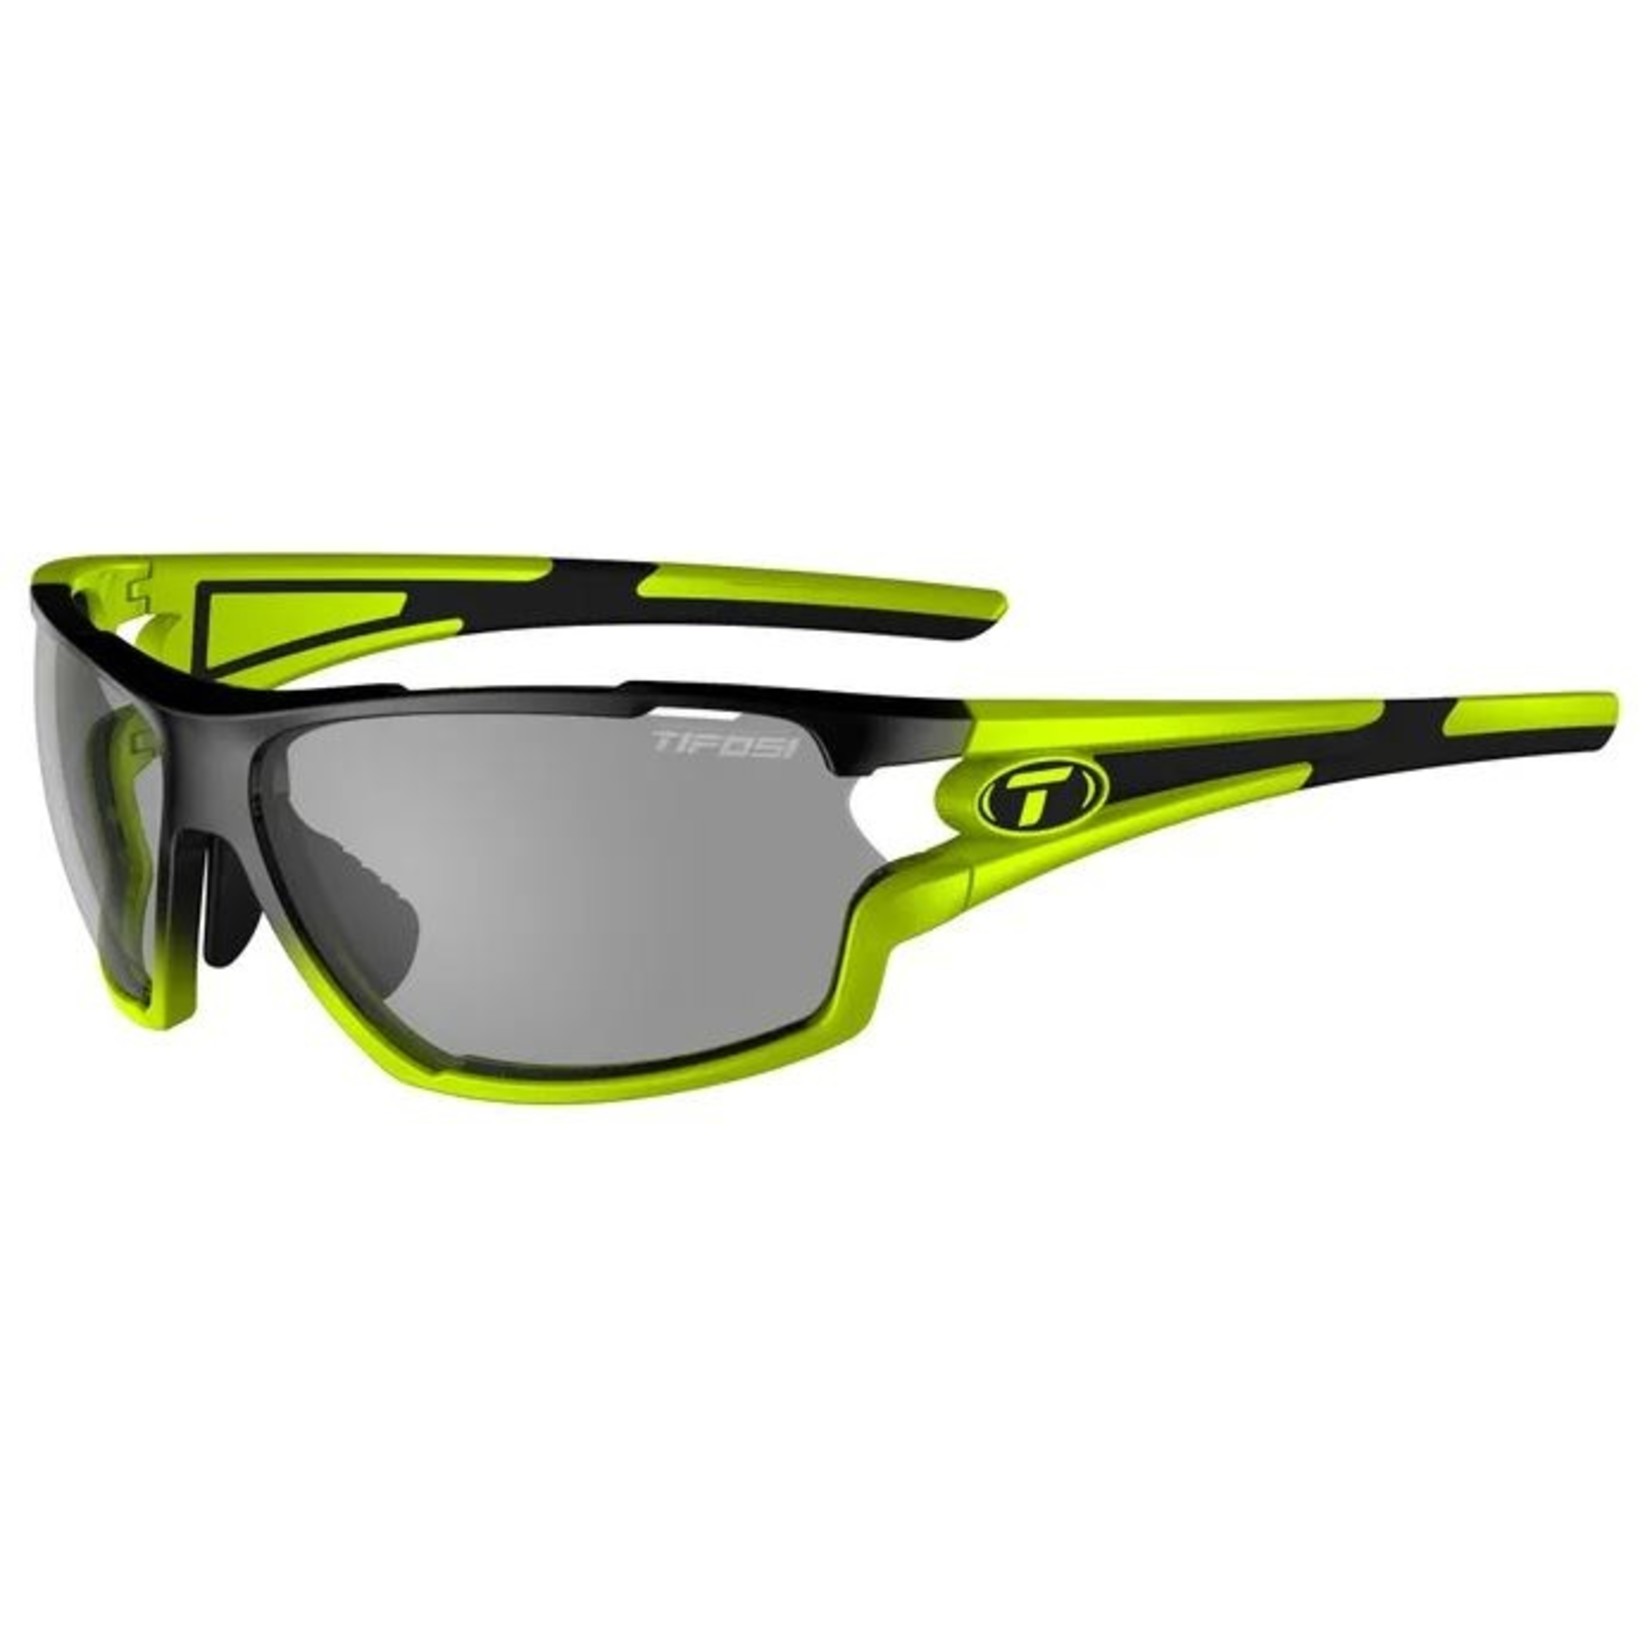 Tifosi Tifosi Cycling Sport Sunglasses - Amok - Fototec - Race Neon